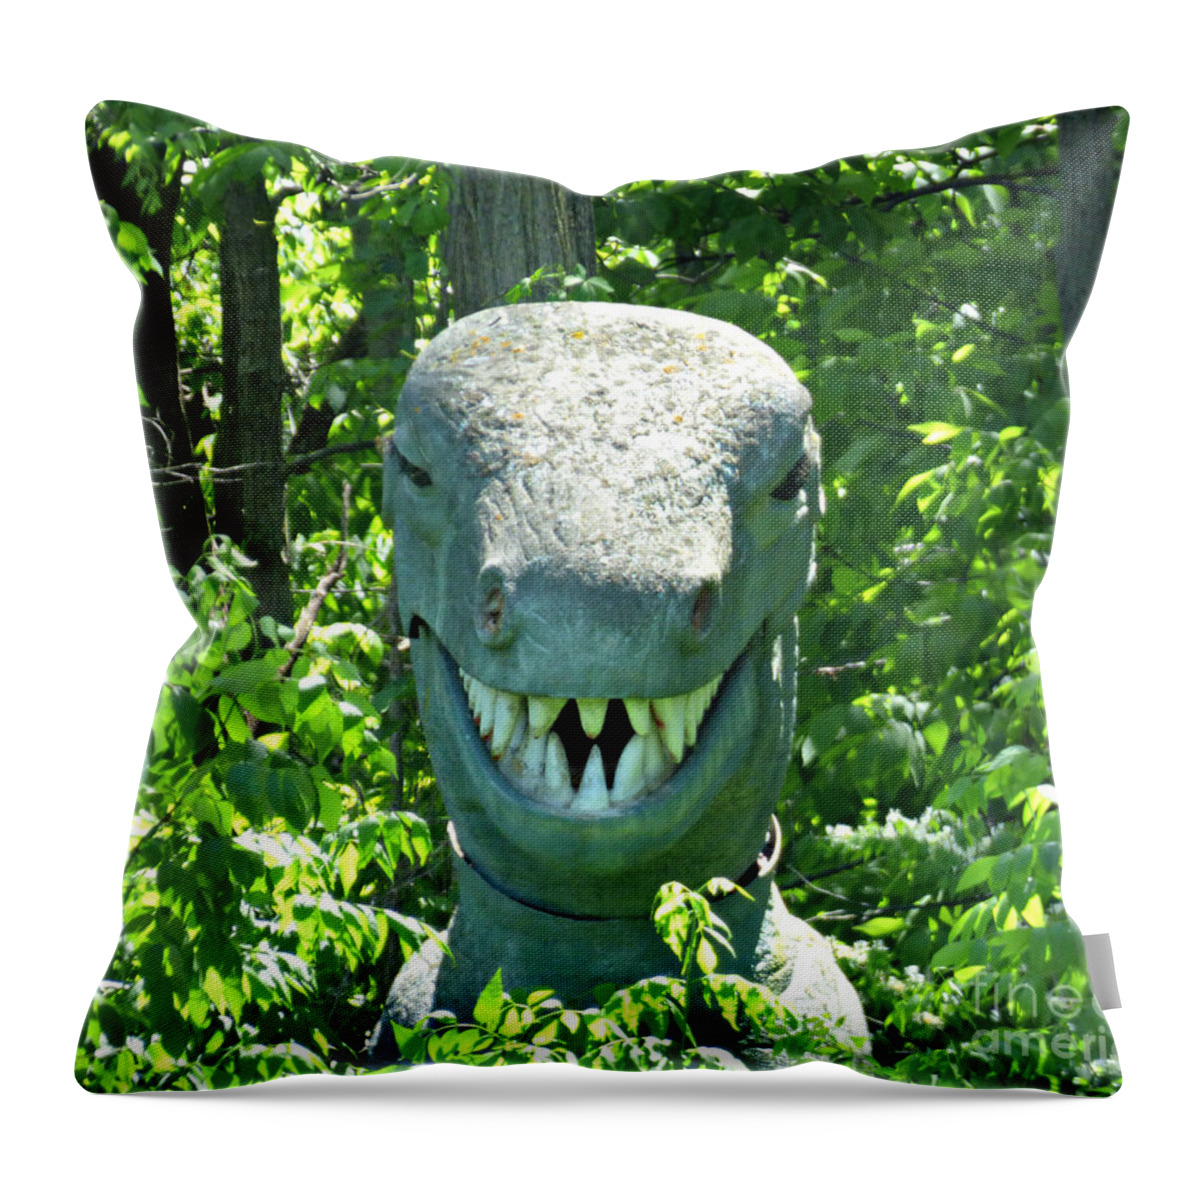 Dinosaur Throw Pillow featuring the photograph Peek-A-Boo #1 by Scott Ward